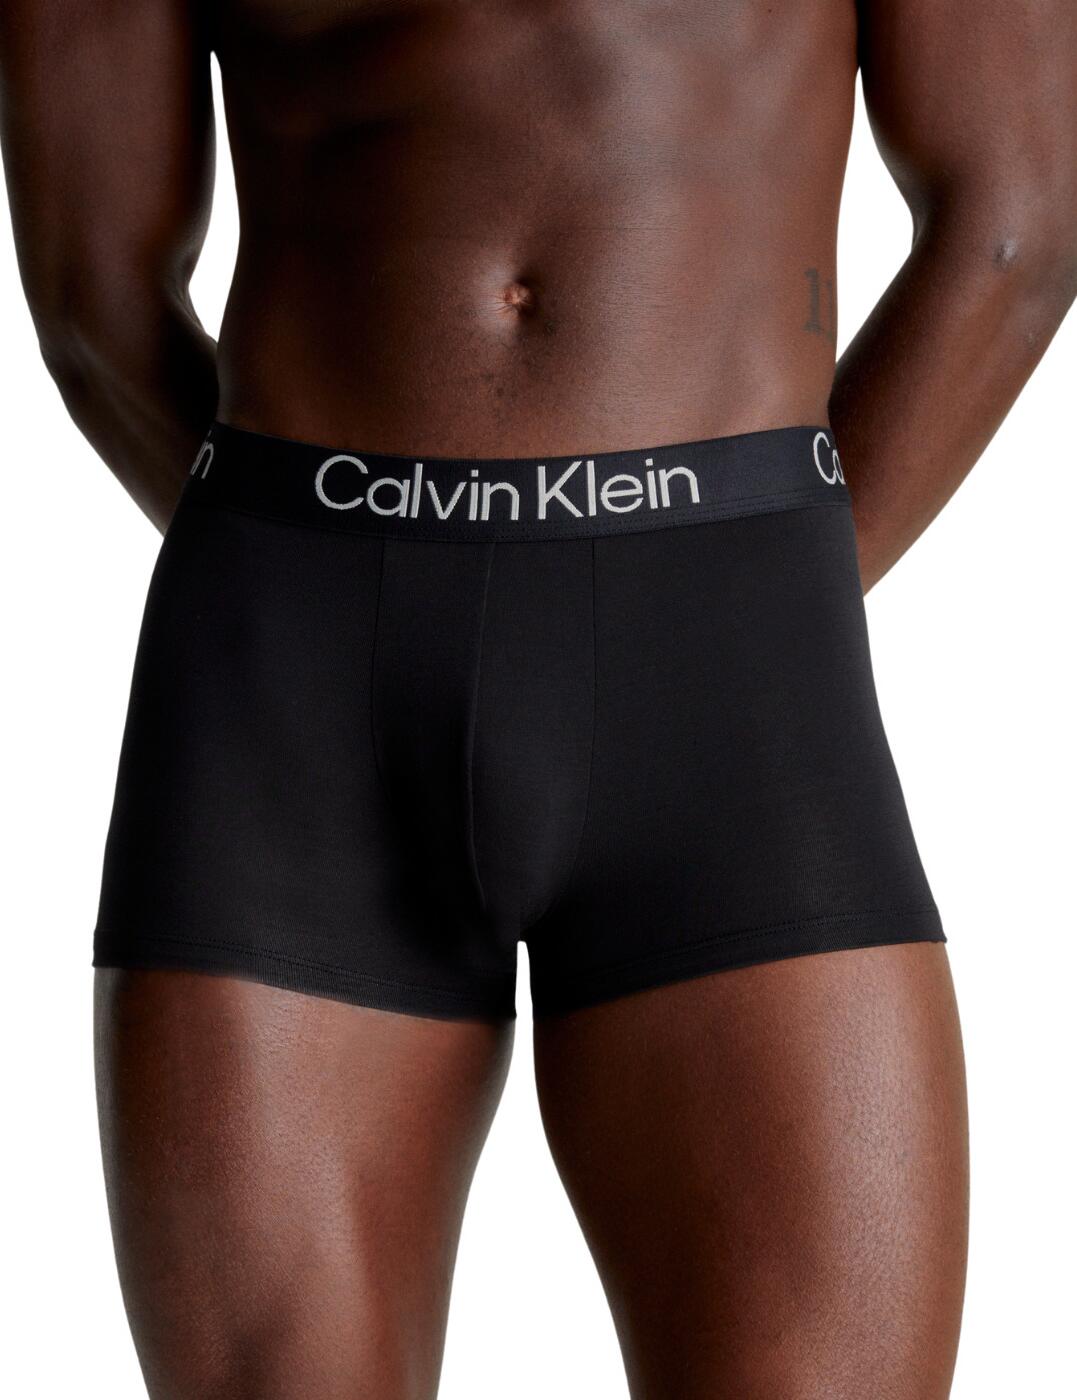 Calvin Klein Trunks 3 Pack Black/Black/Black